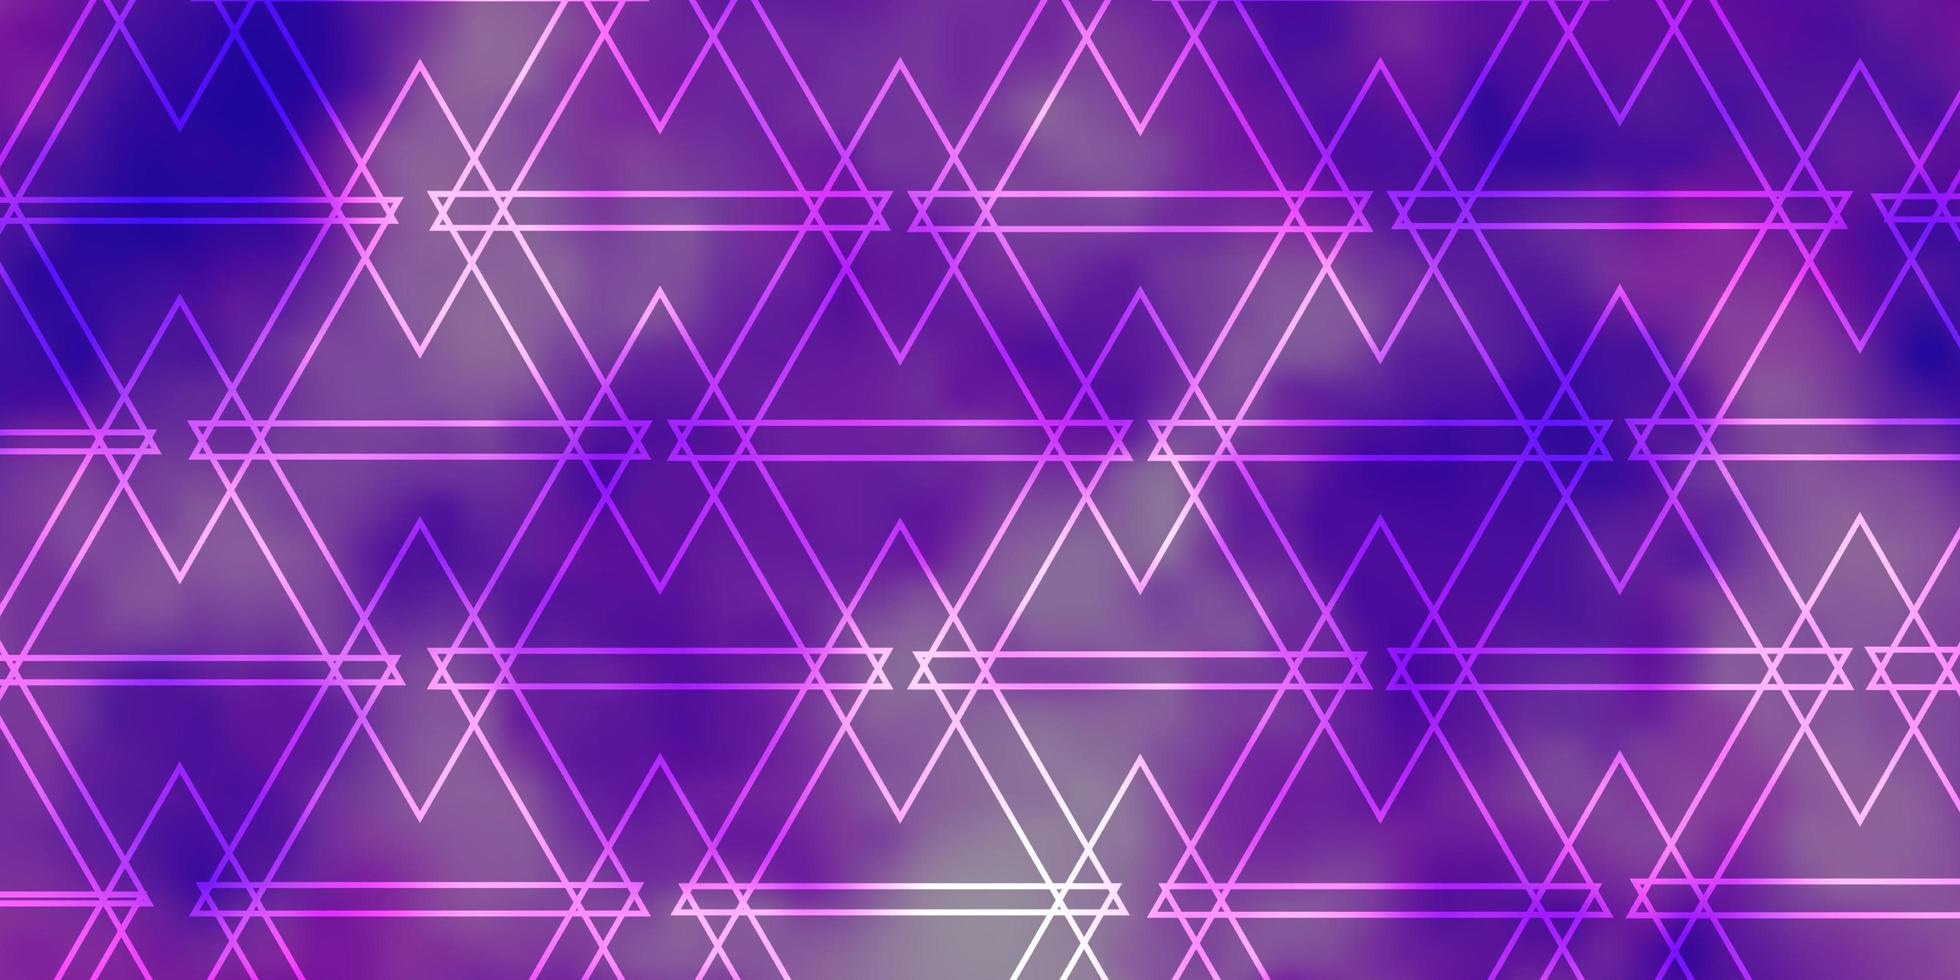 padrão de vetor roxo claro com linhas, triângulos. ilustração gradiente moderna com triângulos coloridos. padrão para livretos, folhetos